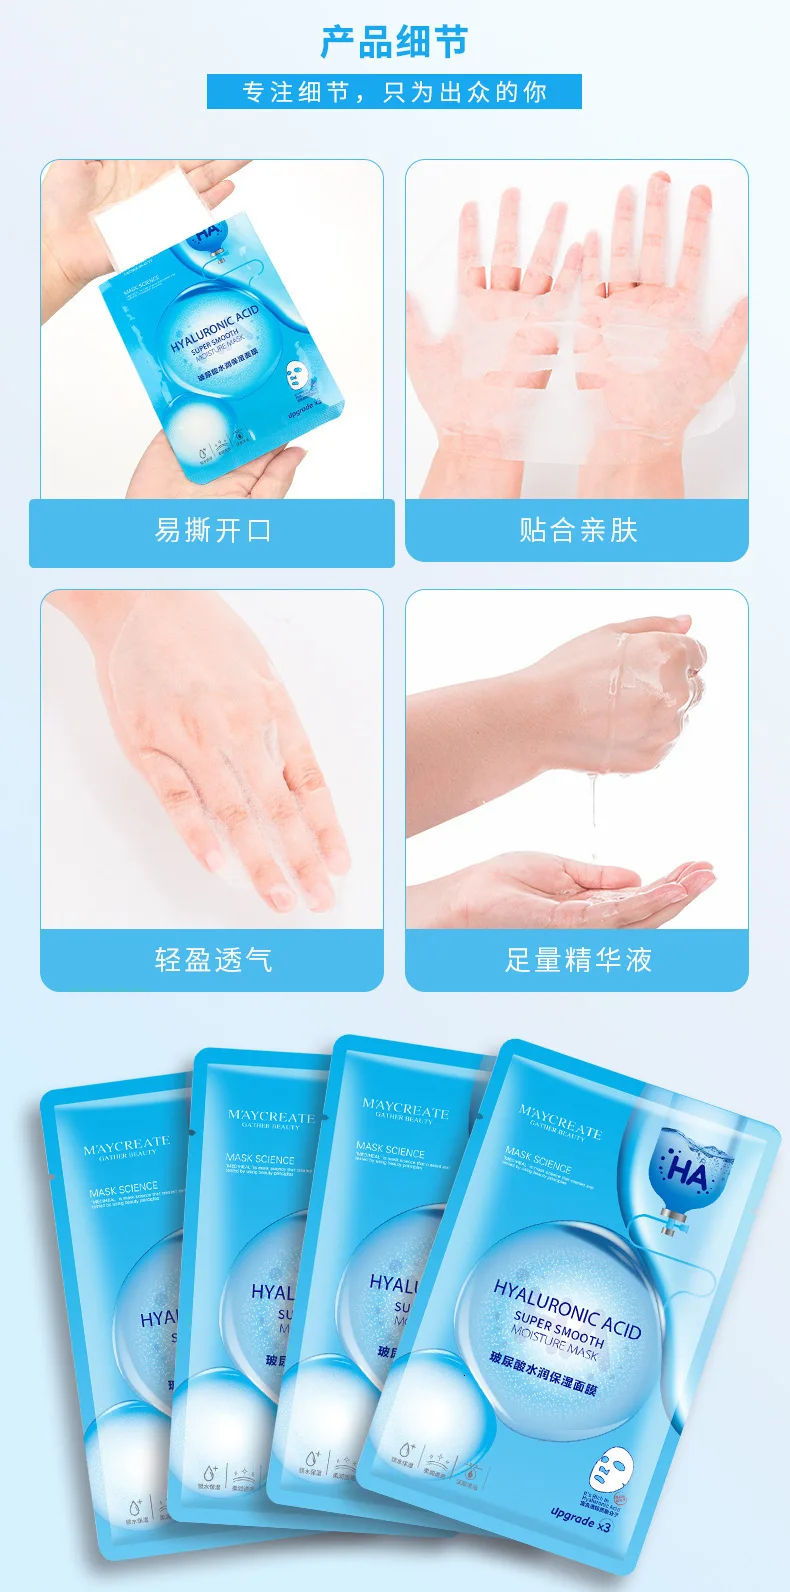 3 шт увлажненитель с гиалуроновой кислотой маска для лица корейская косметика для отбеливания Антивозрастная маска для лица Уход за кожей